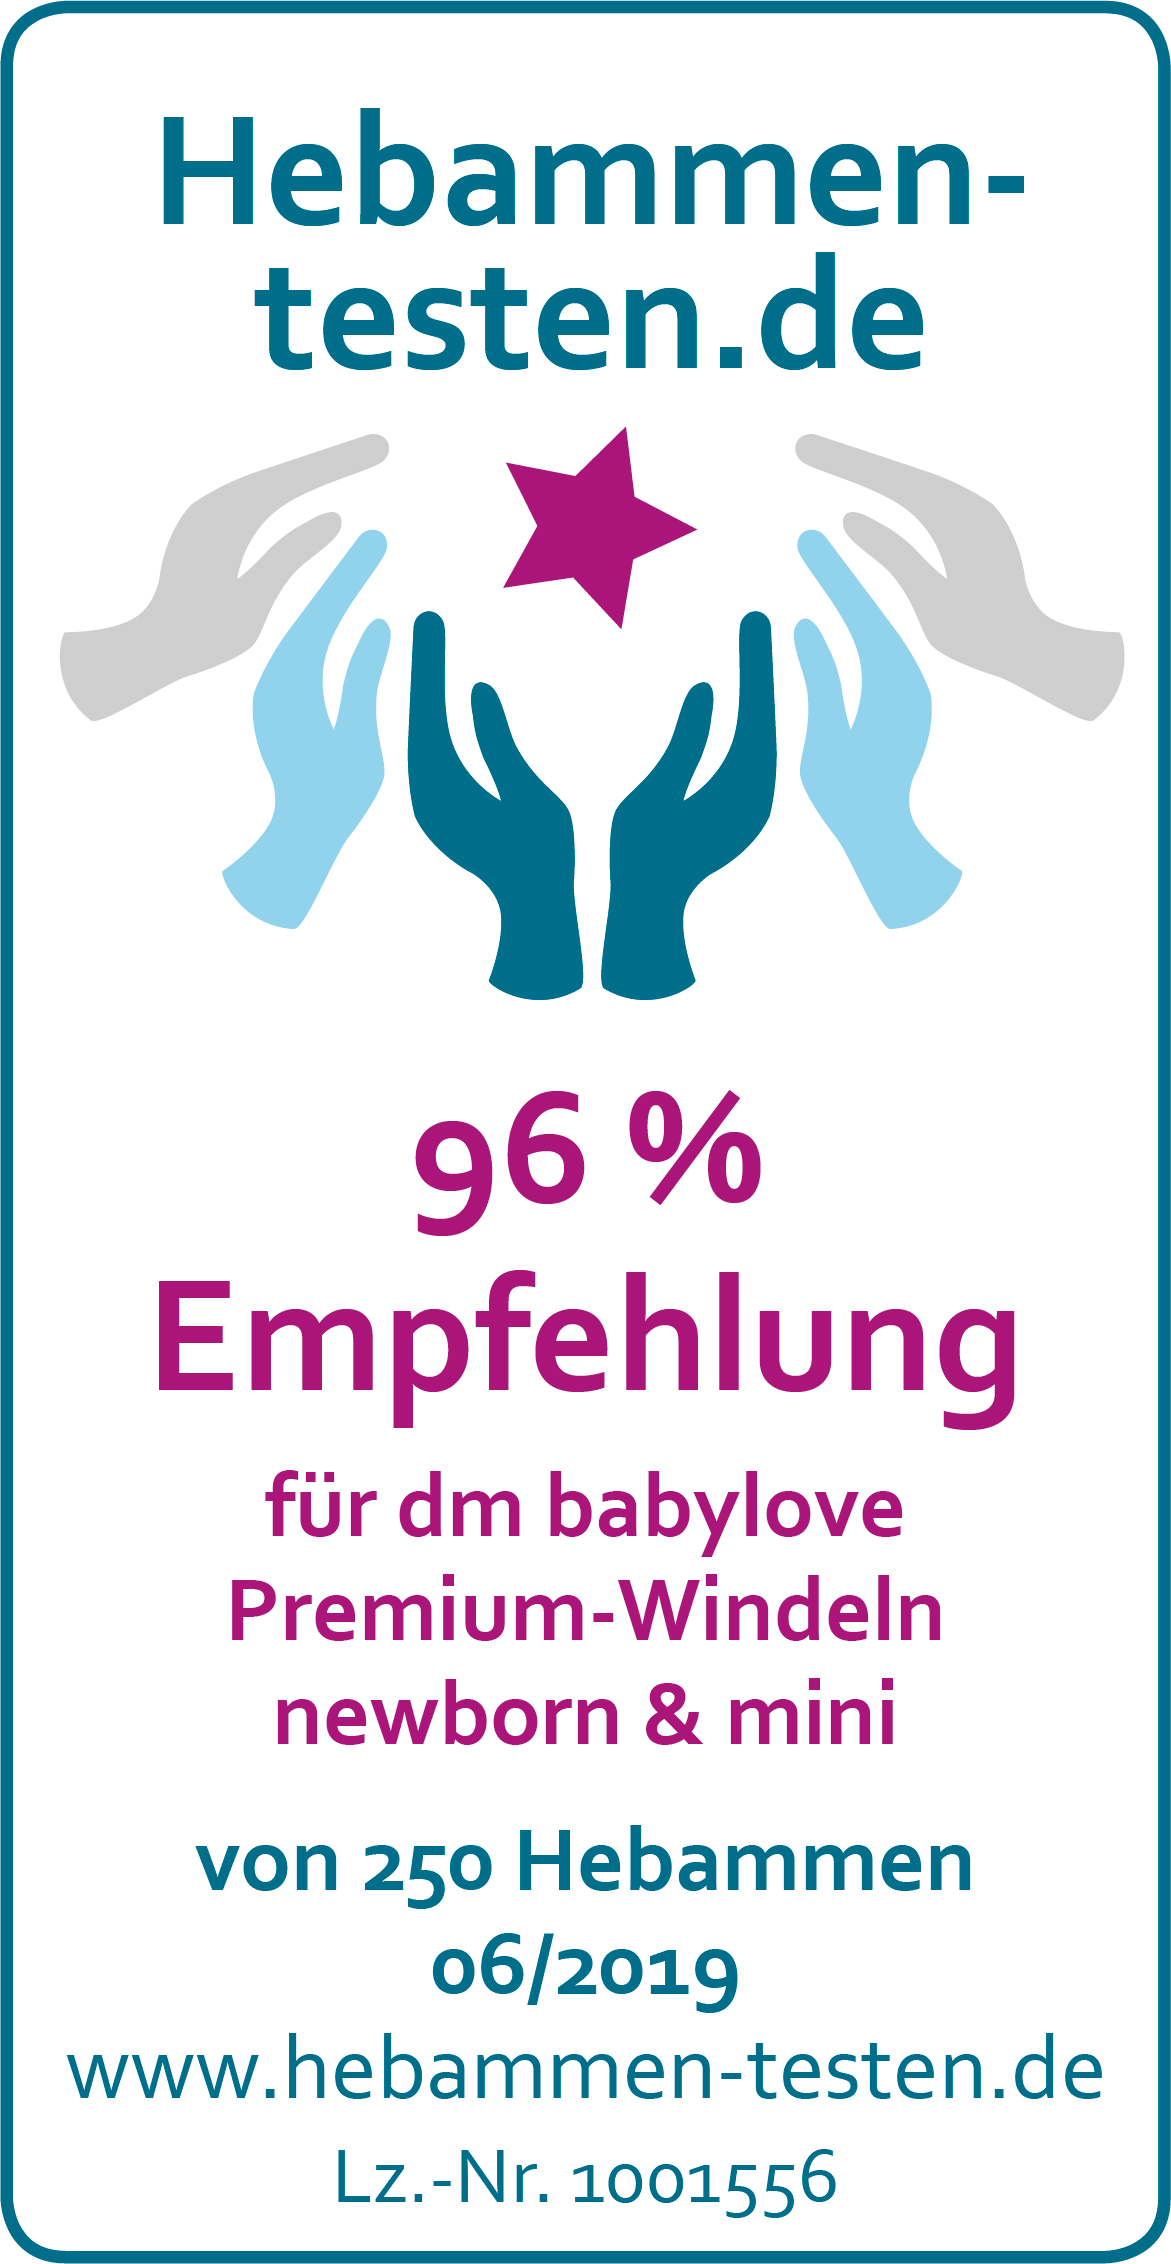 Premium-Windeln newborn & mini Siegel 2019